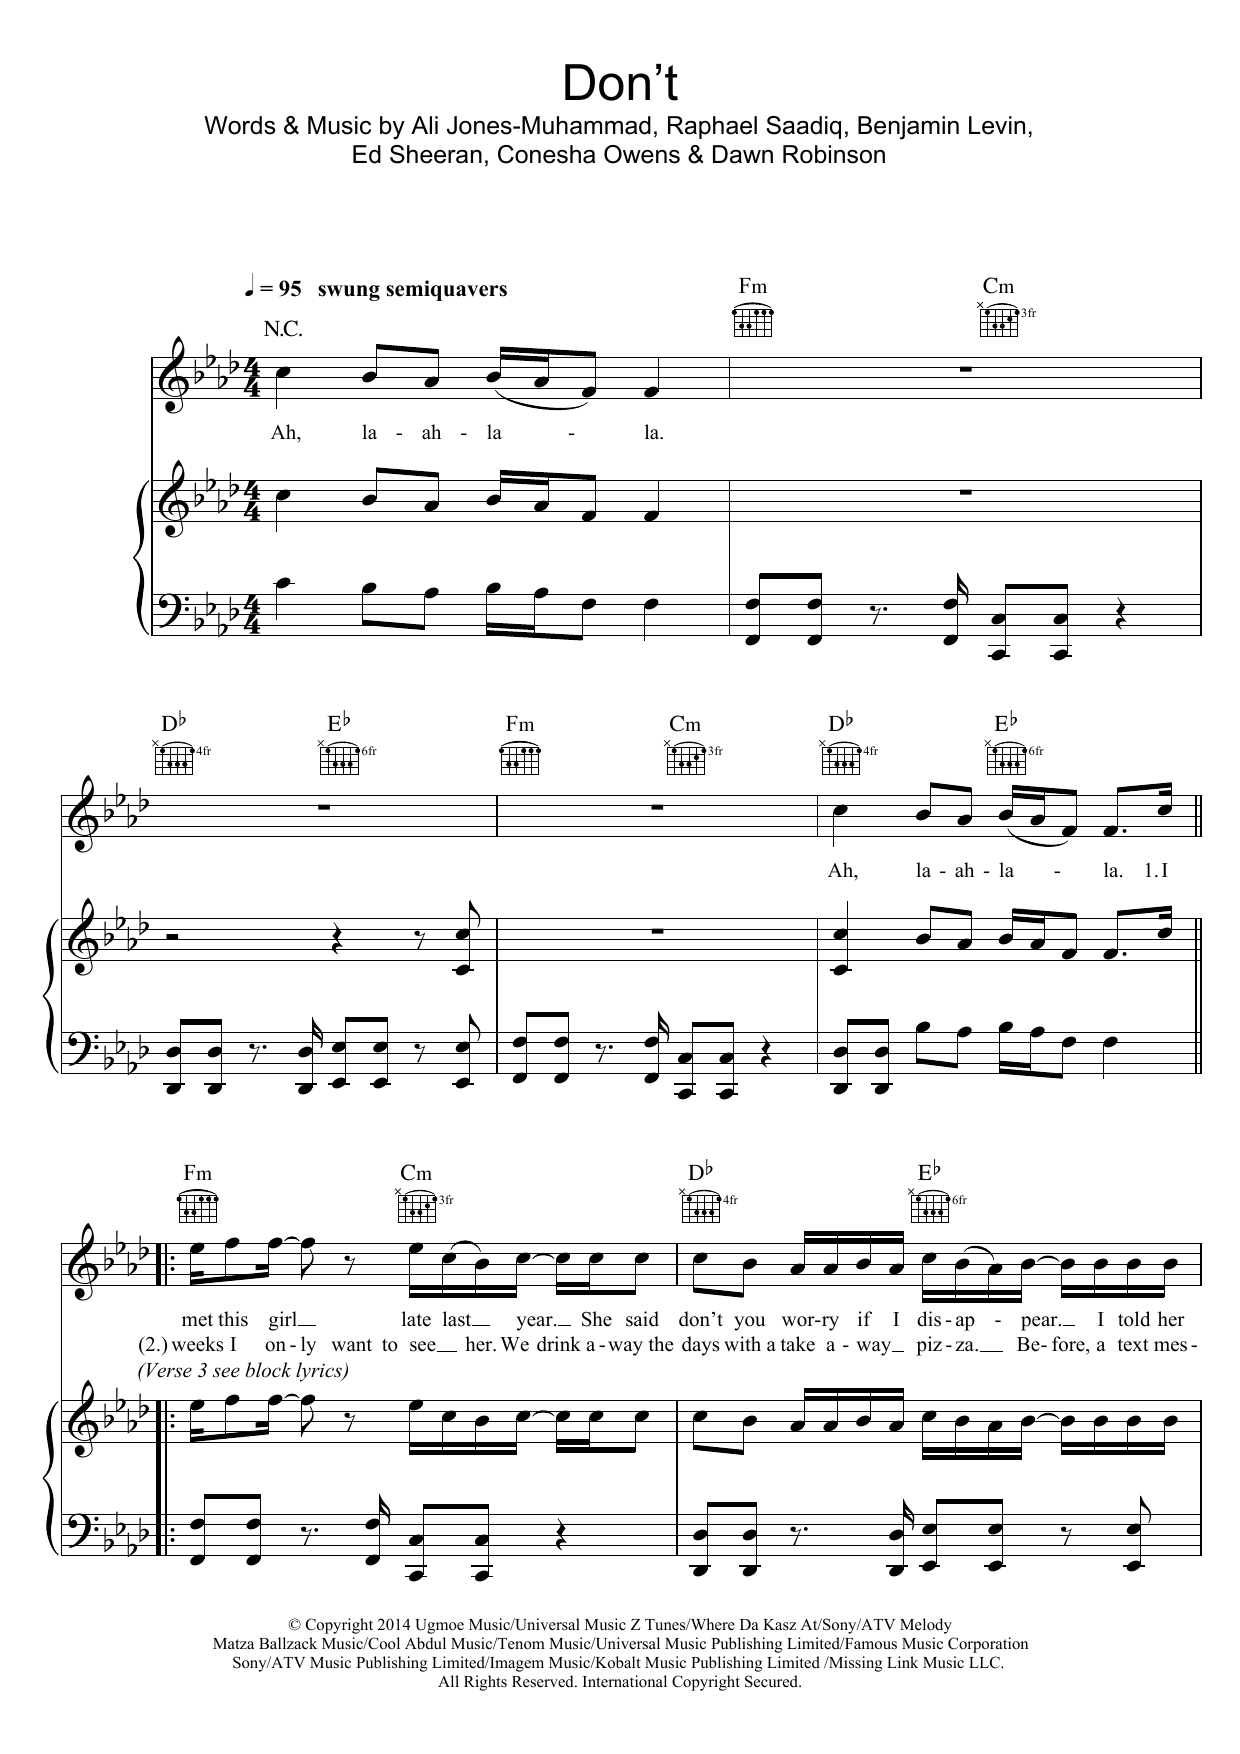 Ed Sheeran Don't Sheet Music Notes & Chords for Ukulele - Download or Print PDF